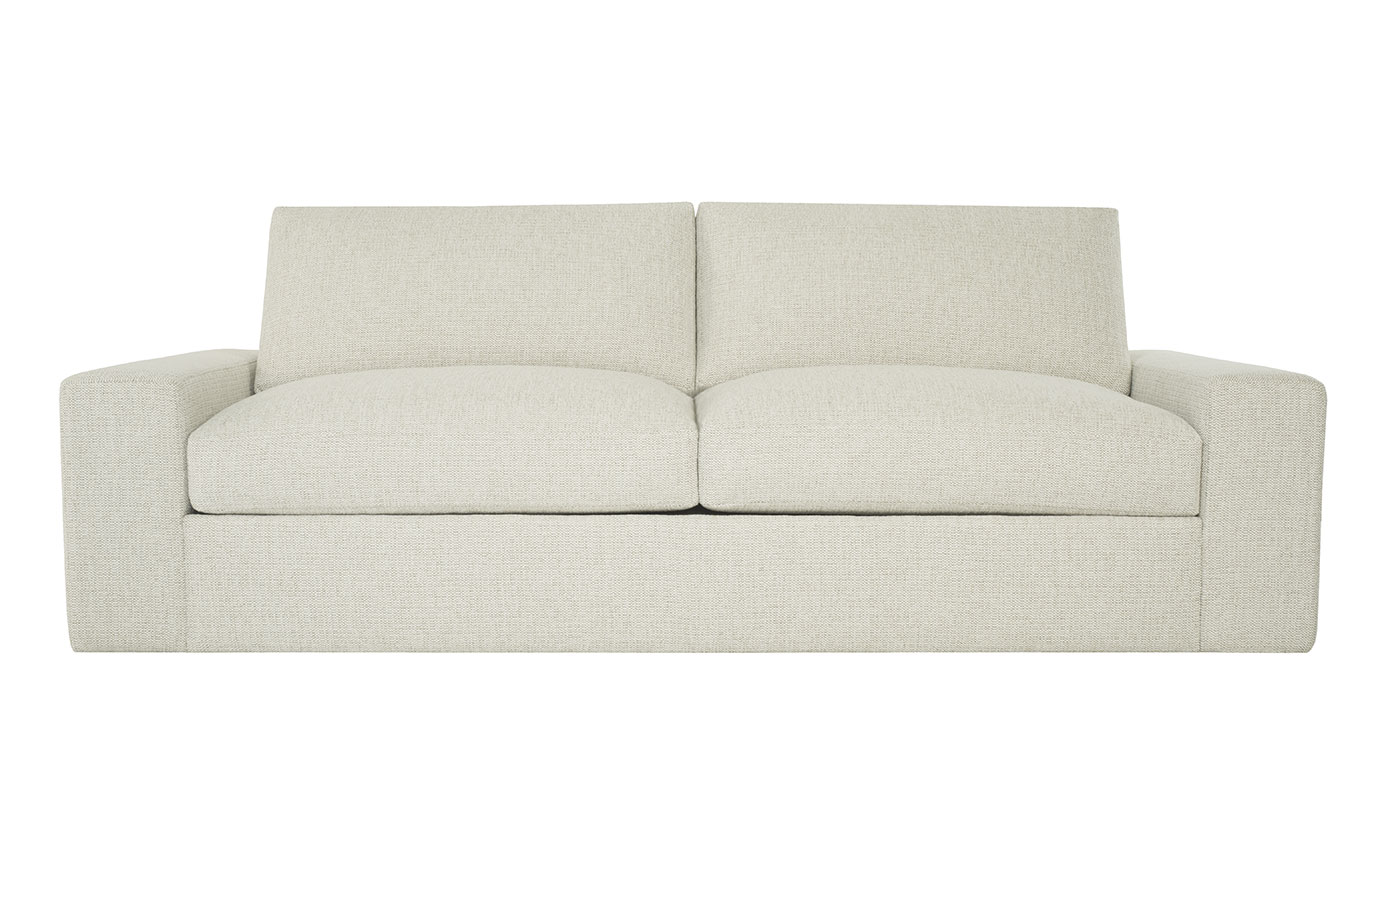 Dual Comfort Dc101 Queen Sleeper Sofa